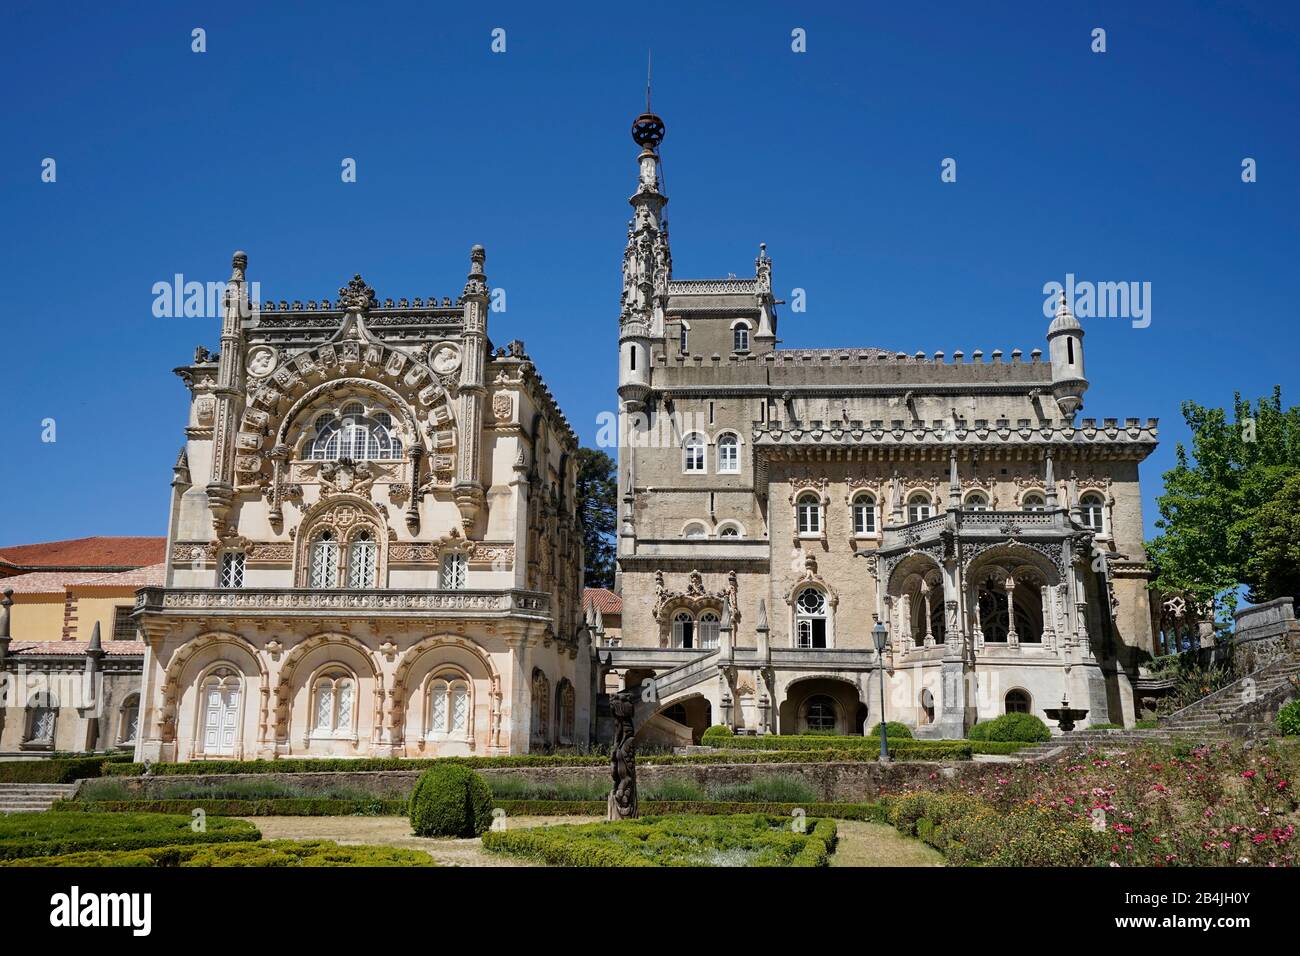 Europe, Portugal, Centro, Coimbra, Mata Nacional do Bucaco, Bussaco National Park, Hotel Bussaco Palace, Garden Stock Photo